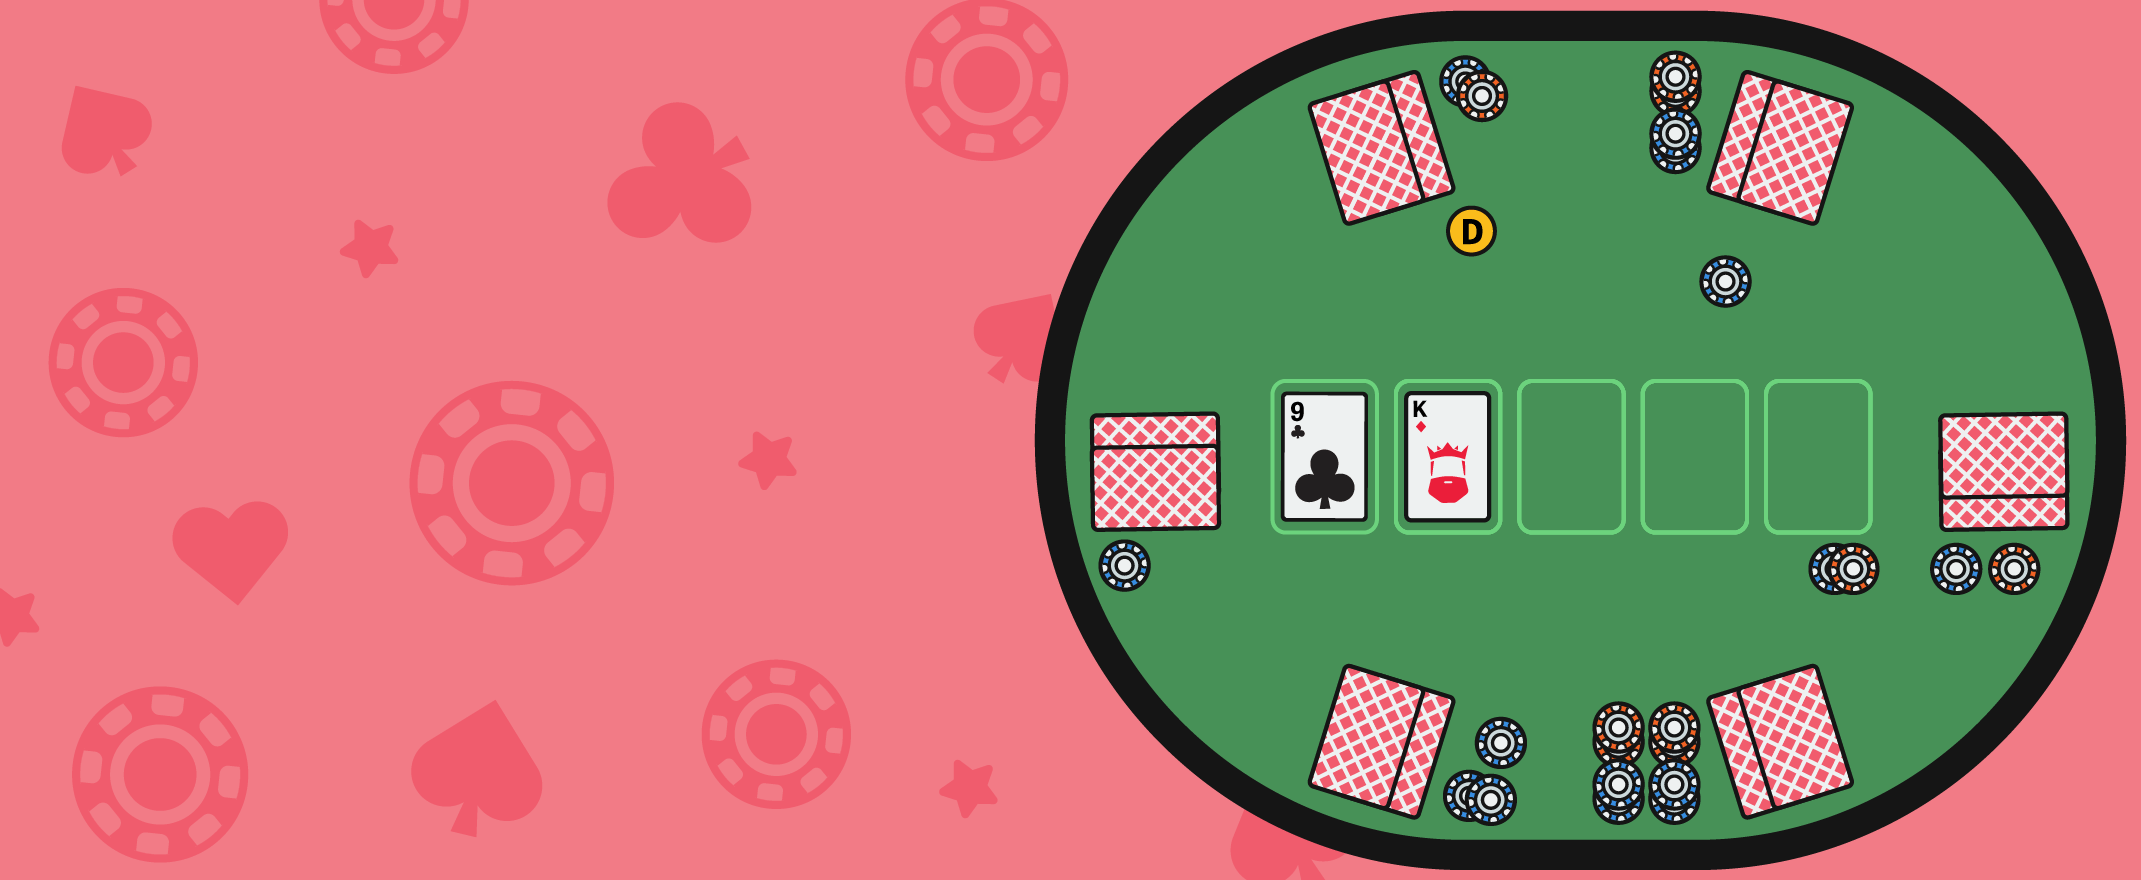 Poker die Positionen der Spieler am Tisch